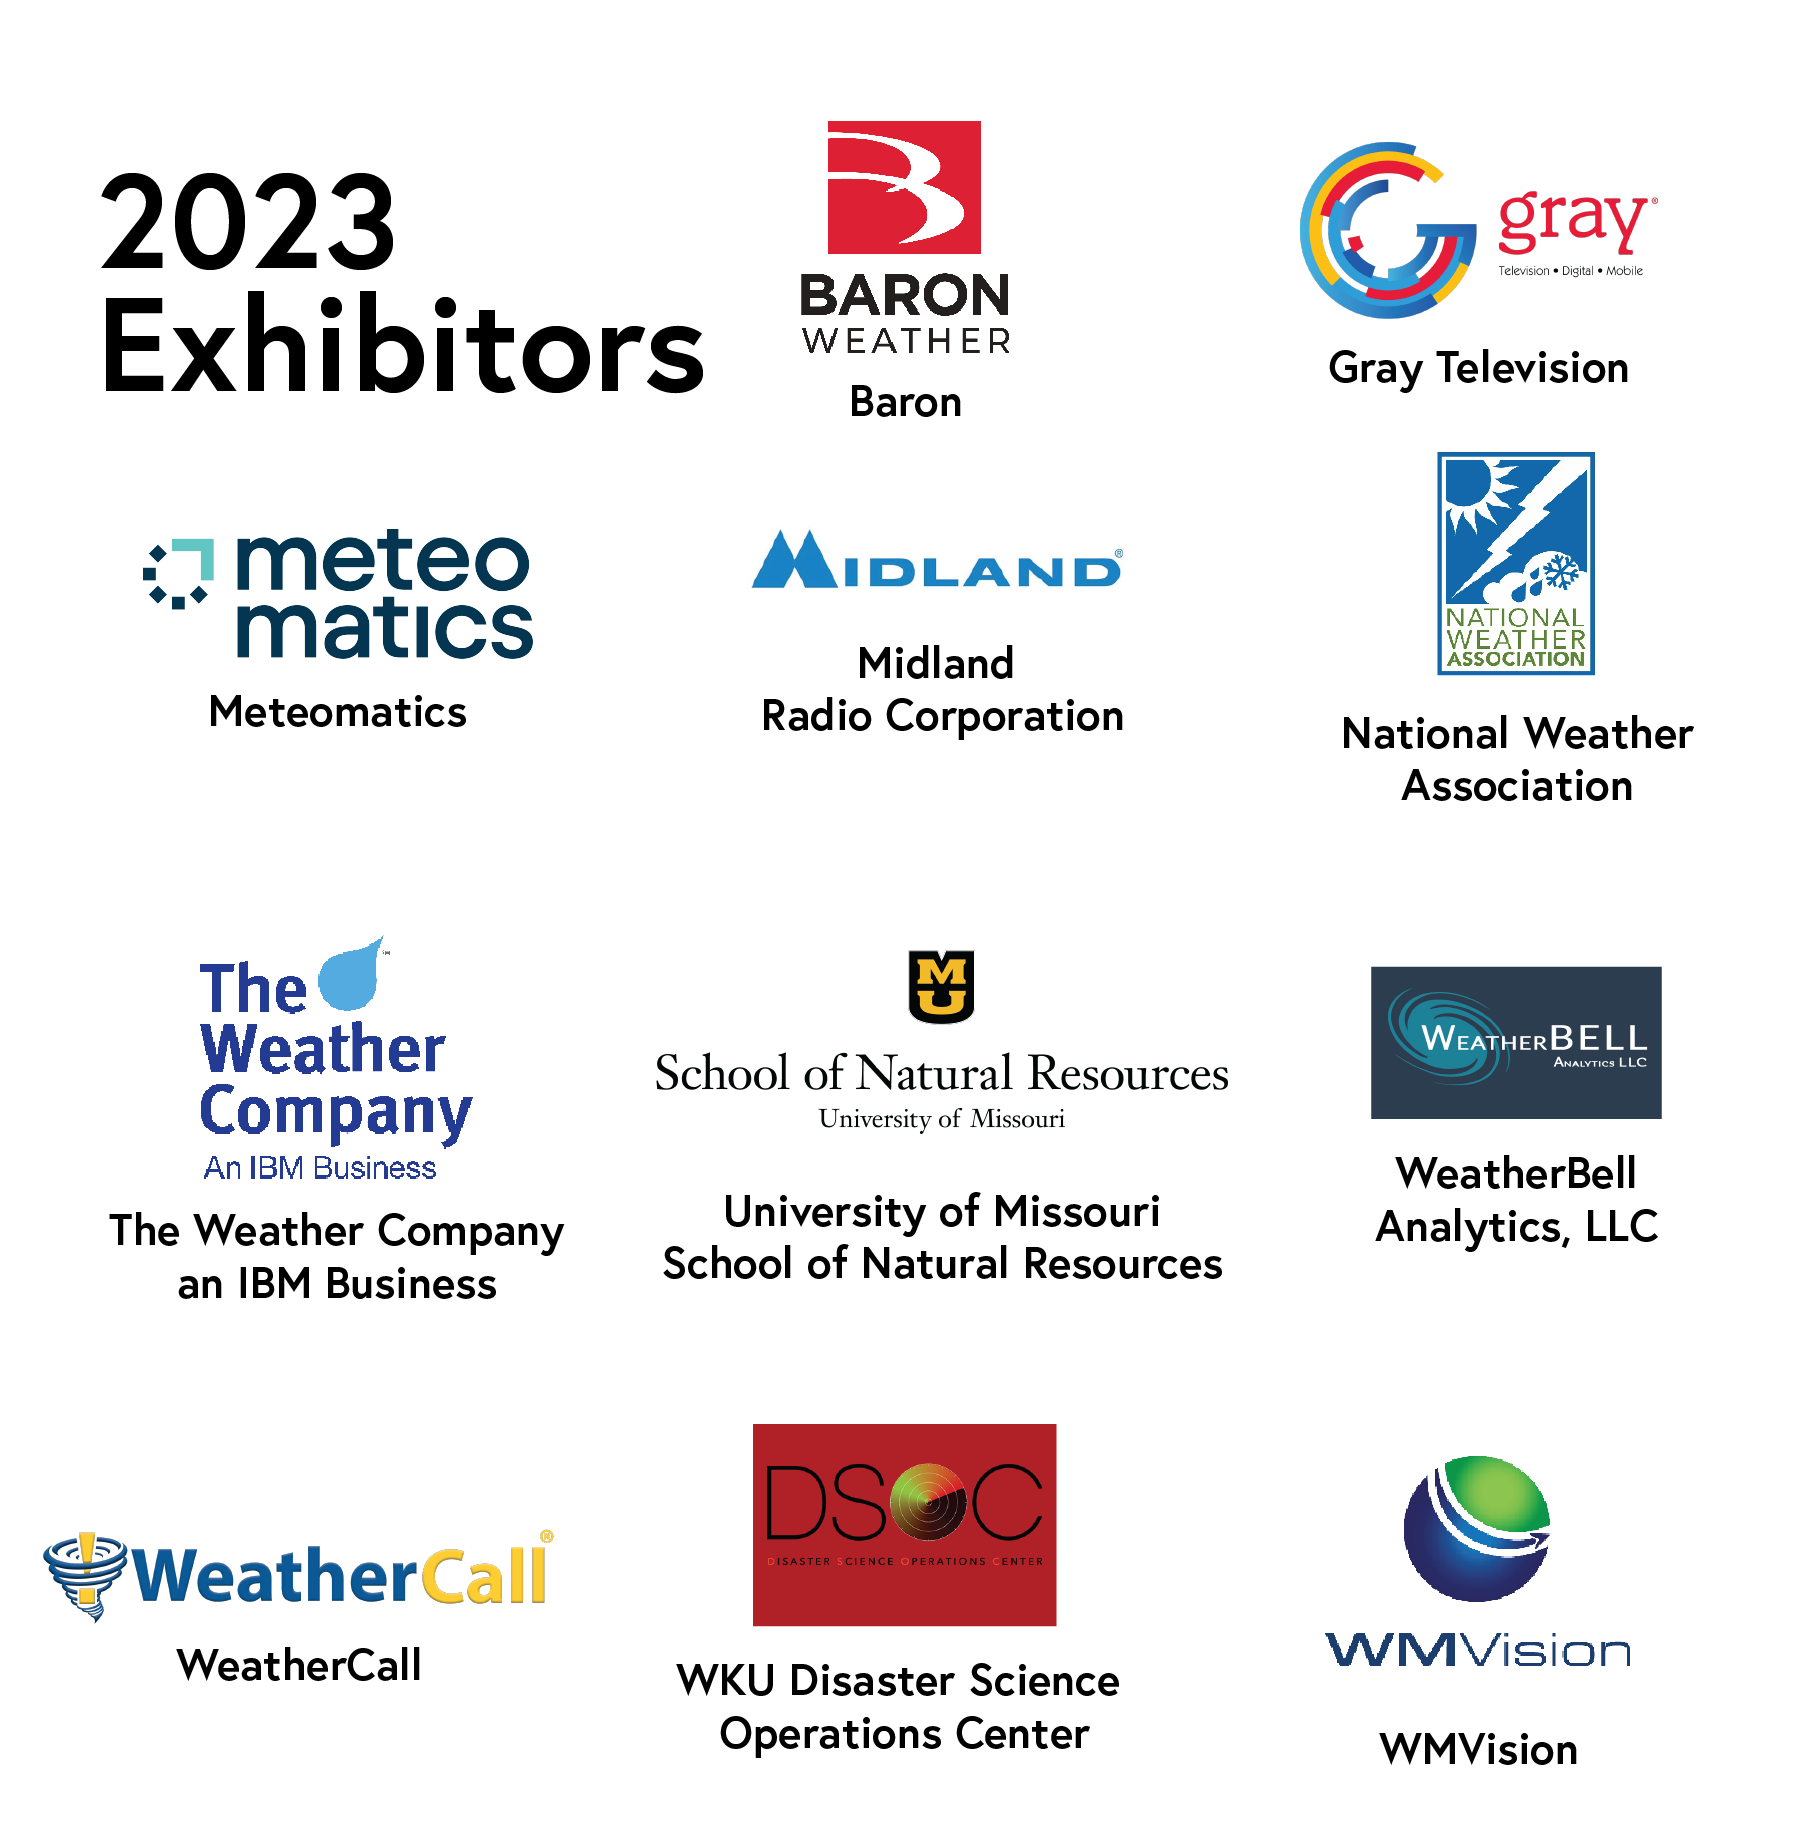 exhibitors of 2023 logos